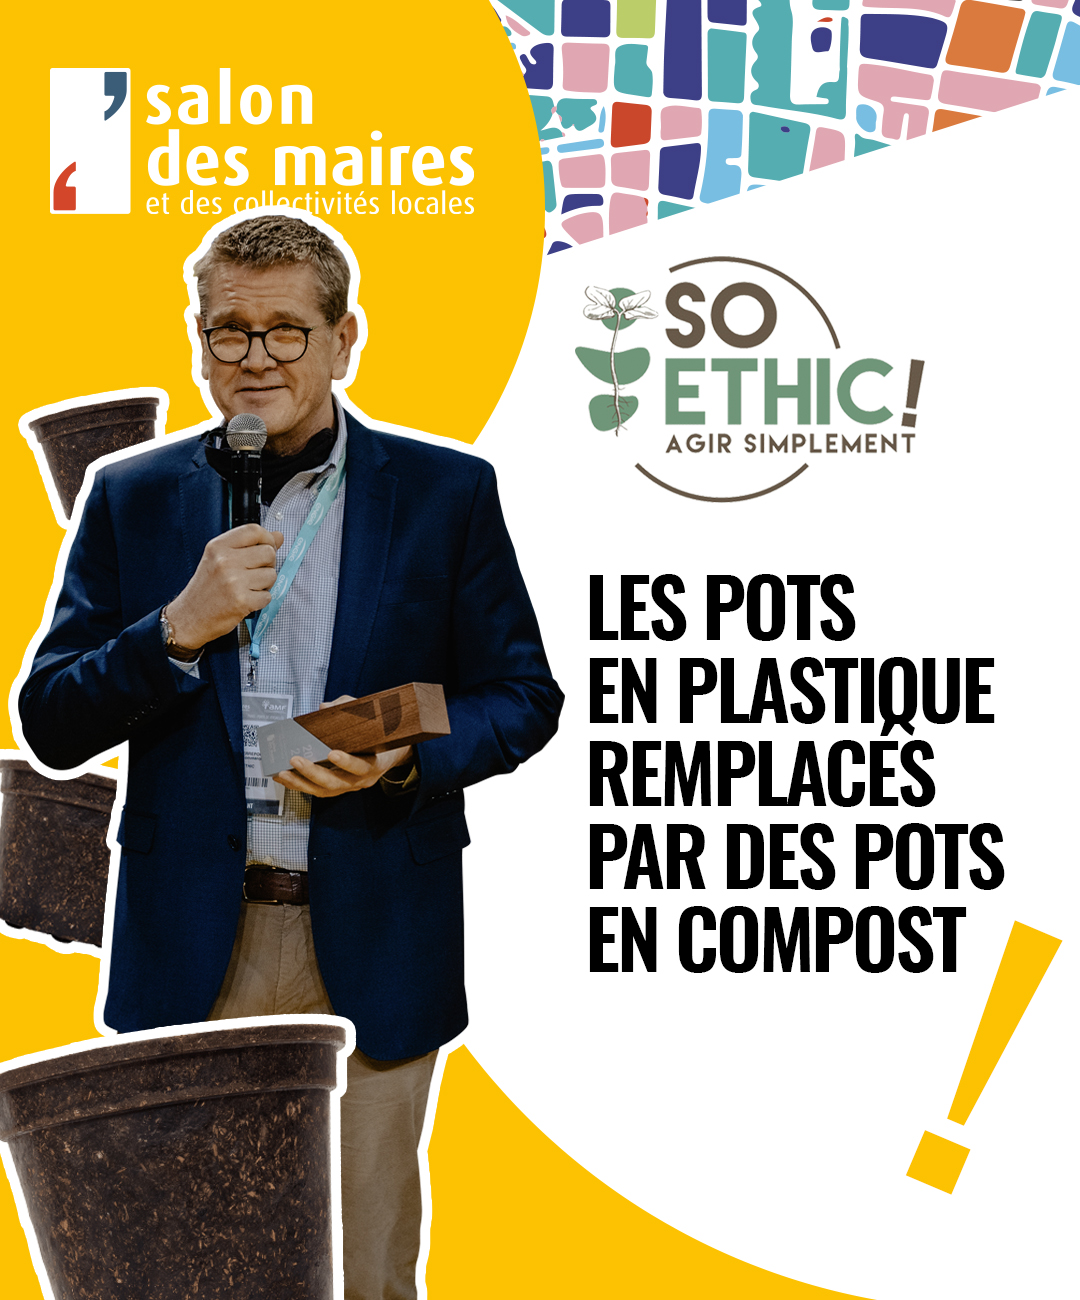 https://www.lagazettedescommunes.com/salon-des-maires-et-des-collectivites-locales/so-ethic-remplace-les-pots-en-plastique-par-des-pots-en-compost/